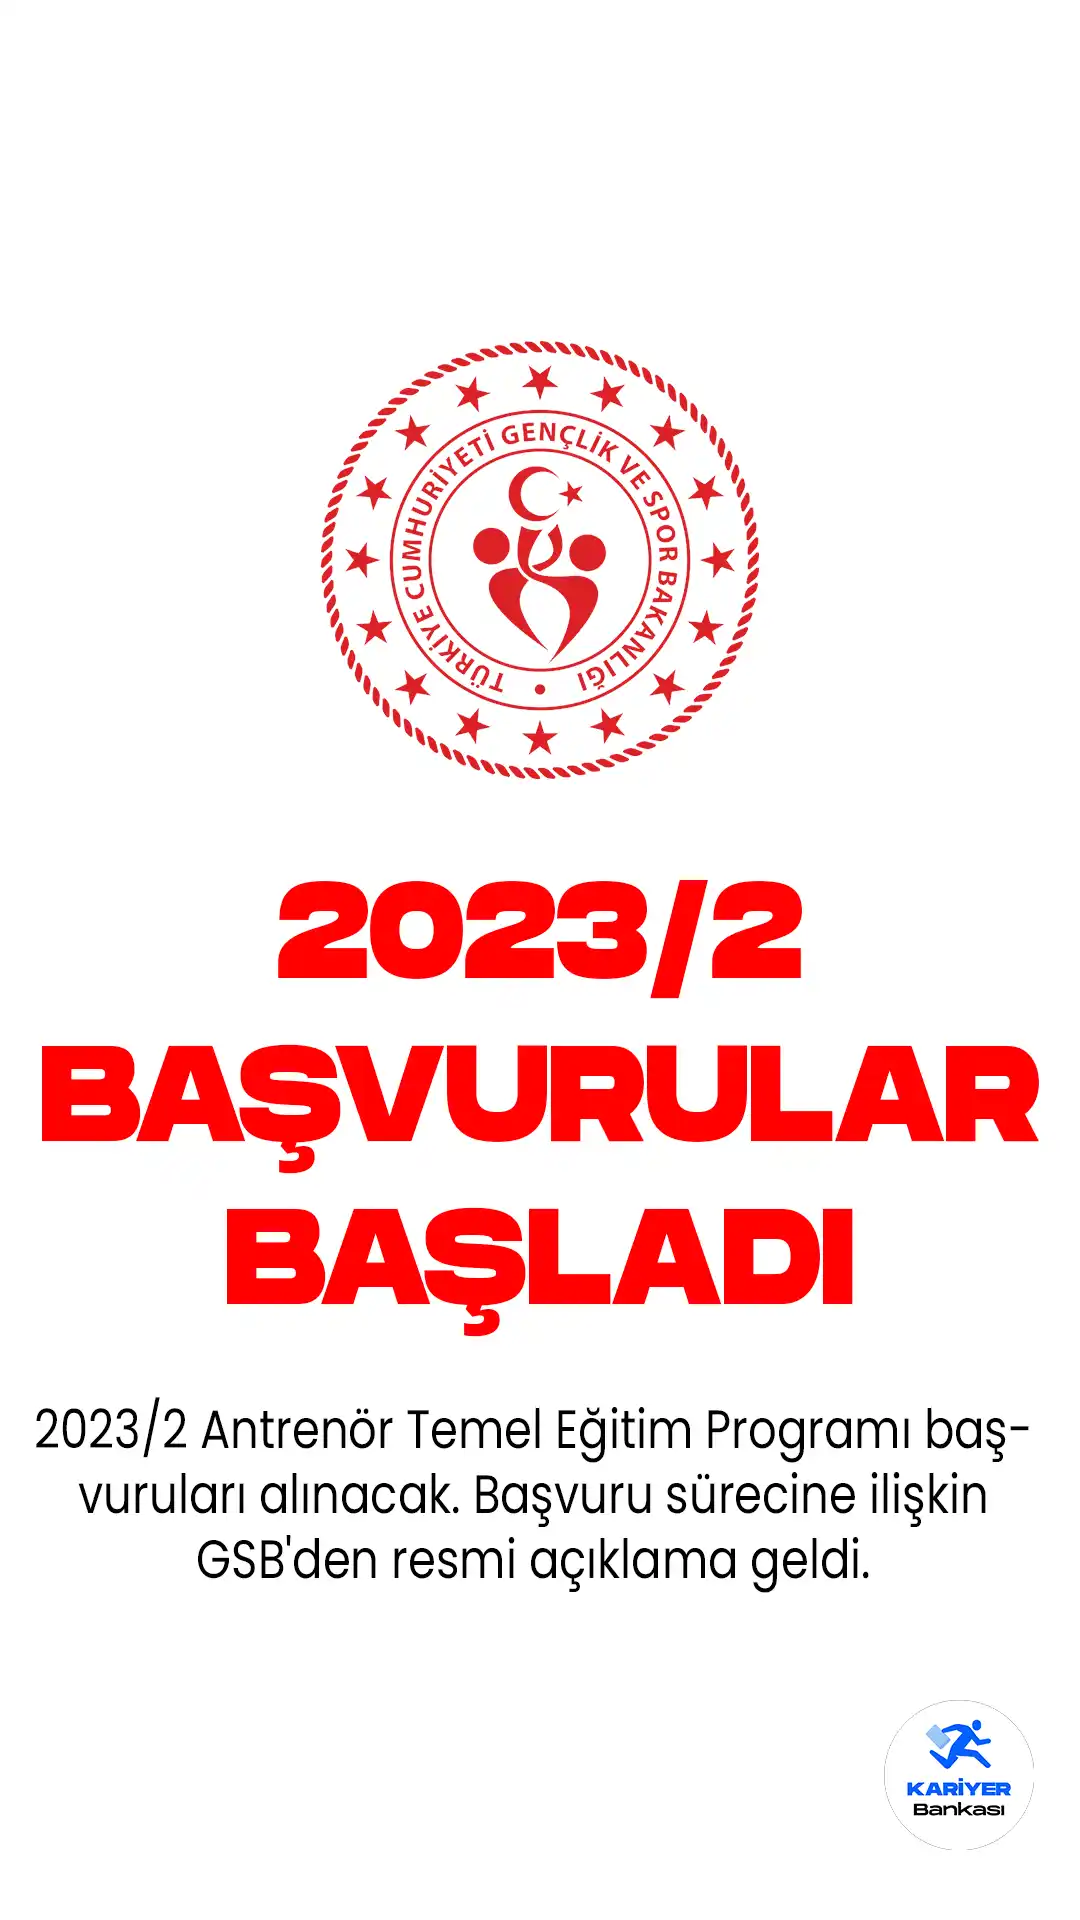 2023/2 Antrenör Temel Eğitim Programı başvuruları alınacak. Başvuru sürecine ilişkin GSB'den resmi açıklama geldi.